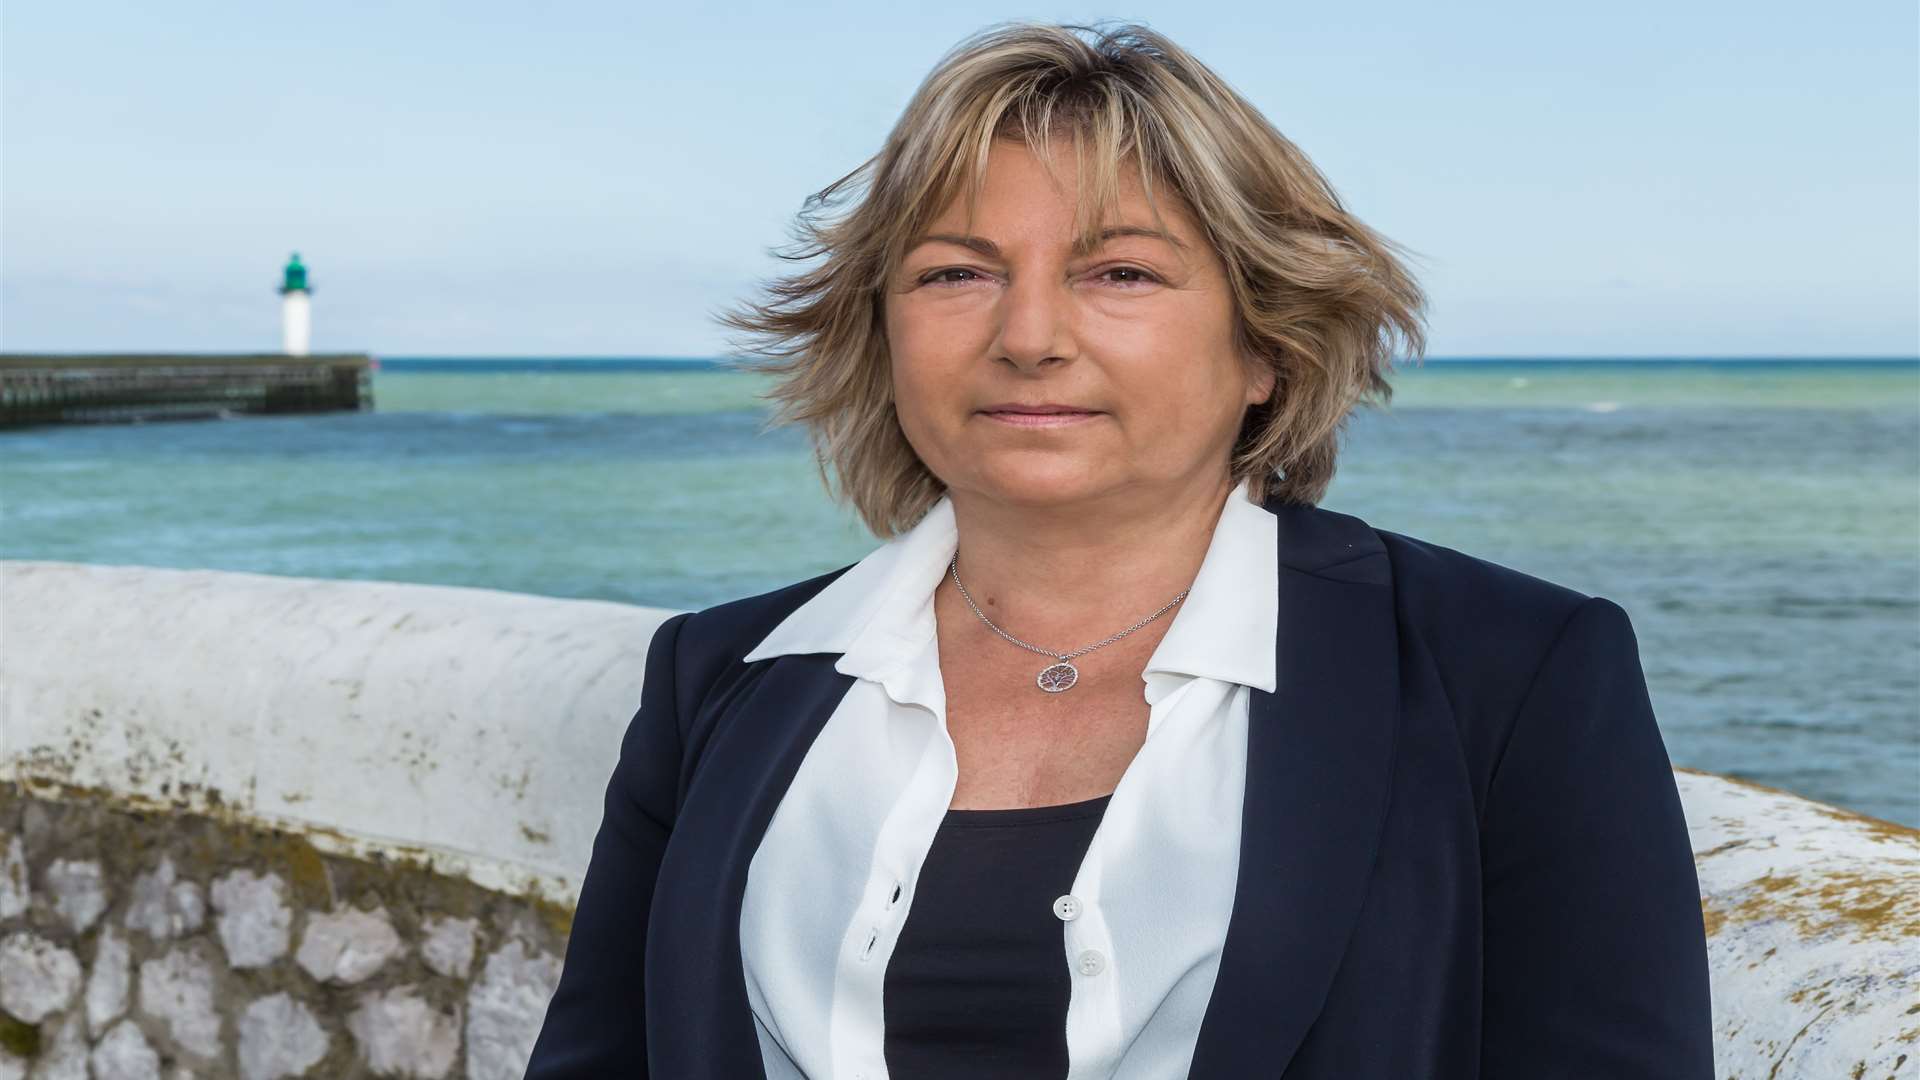 Mayor of Calais Natacha Bouchart